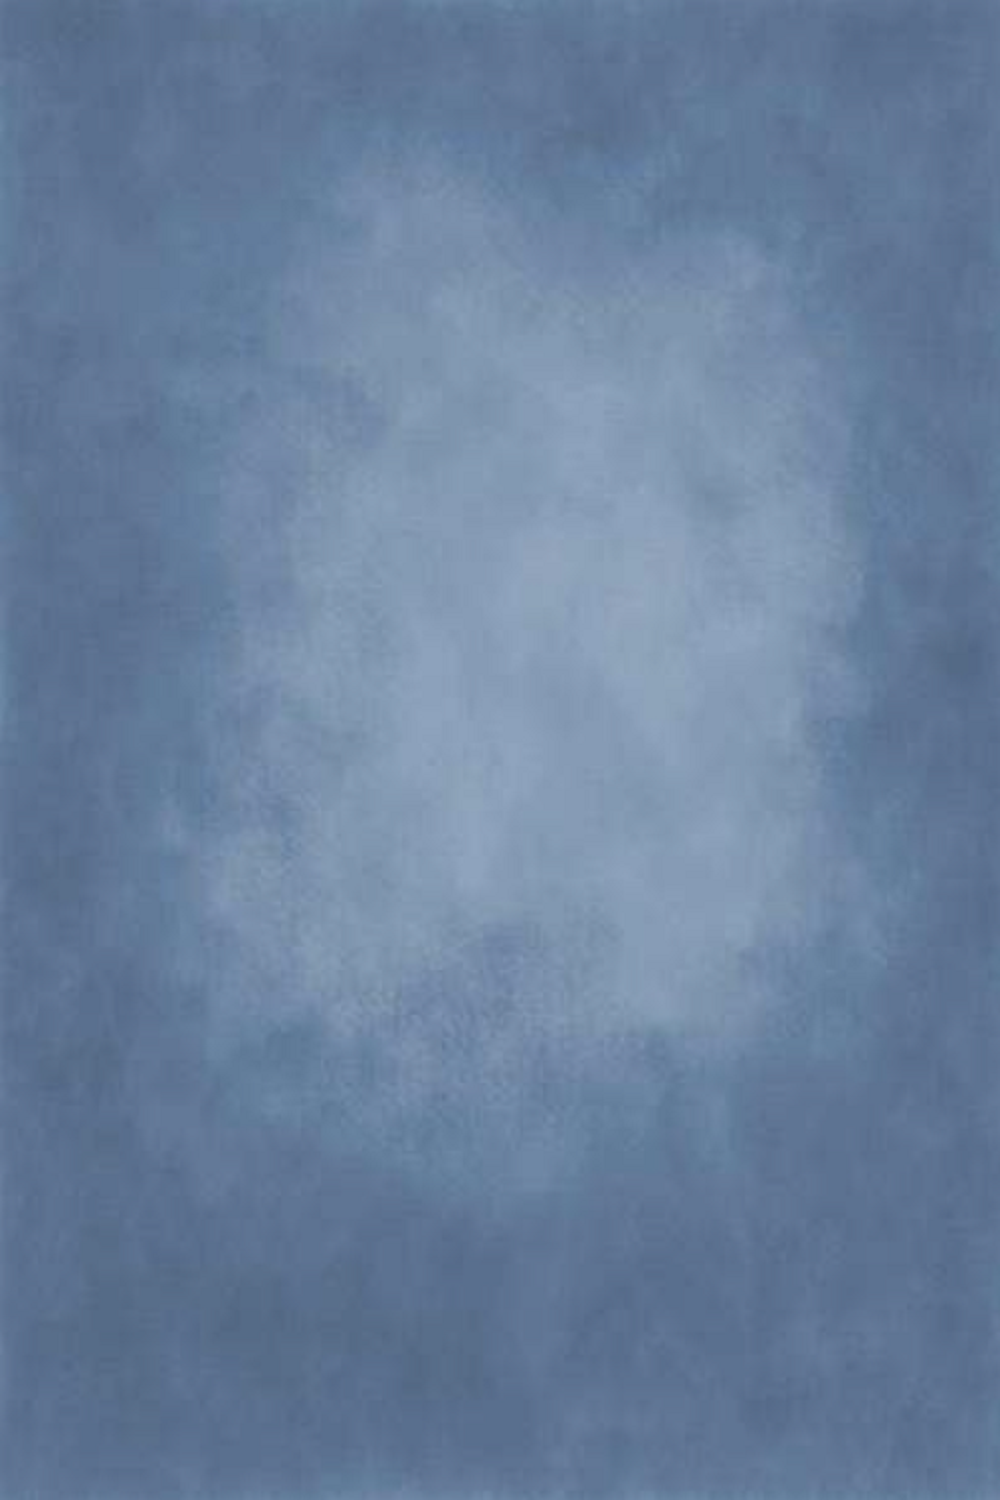 Kate コールドブルーテクスチャの抽象的な背景布